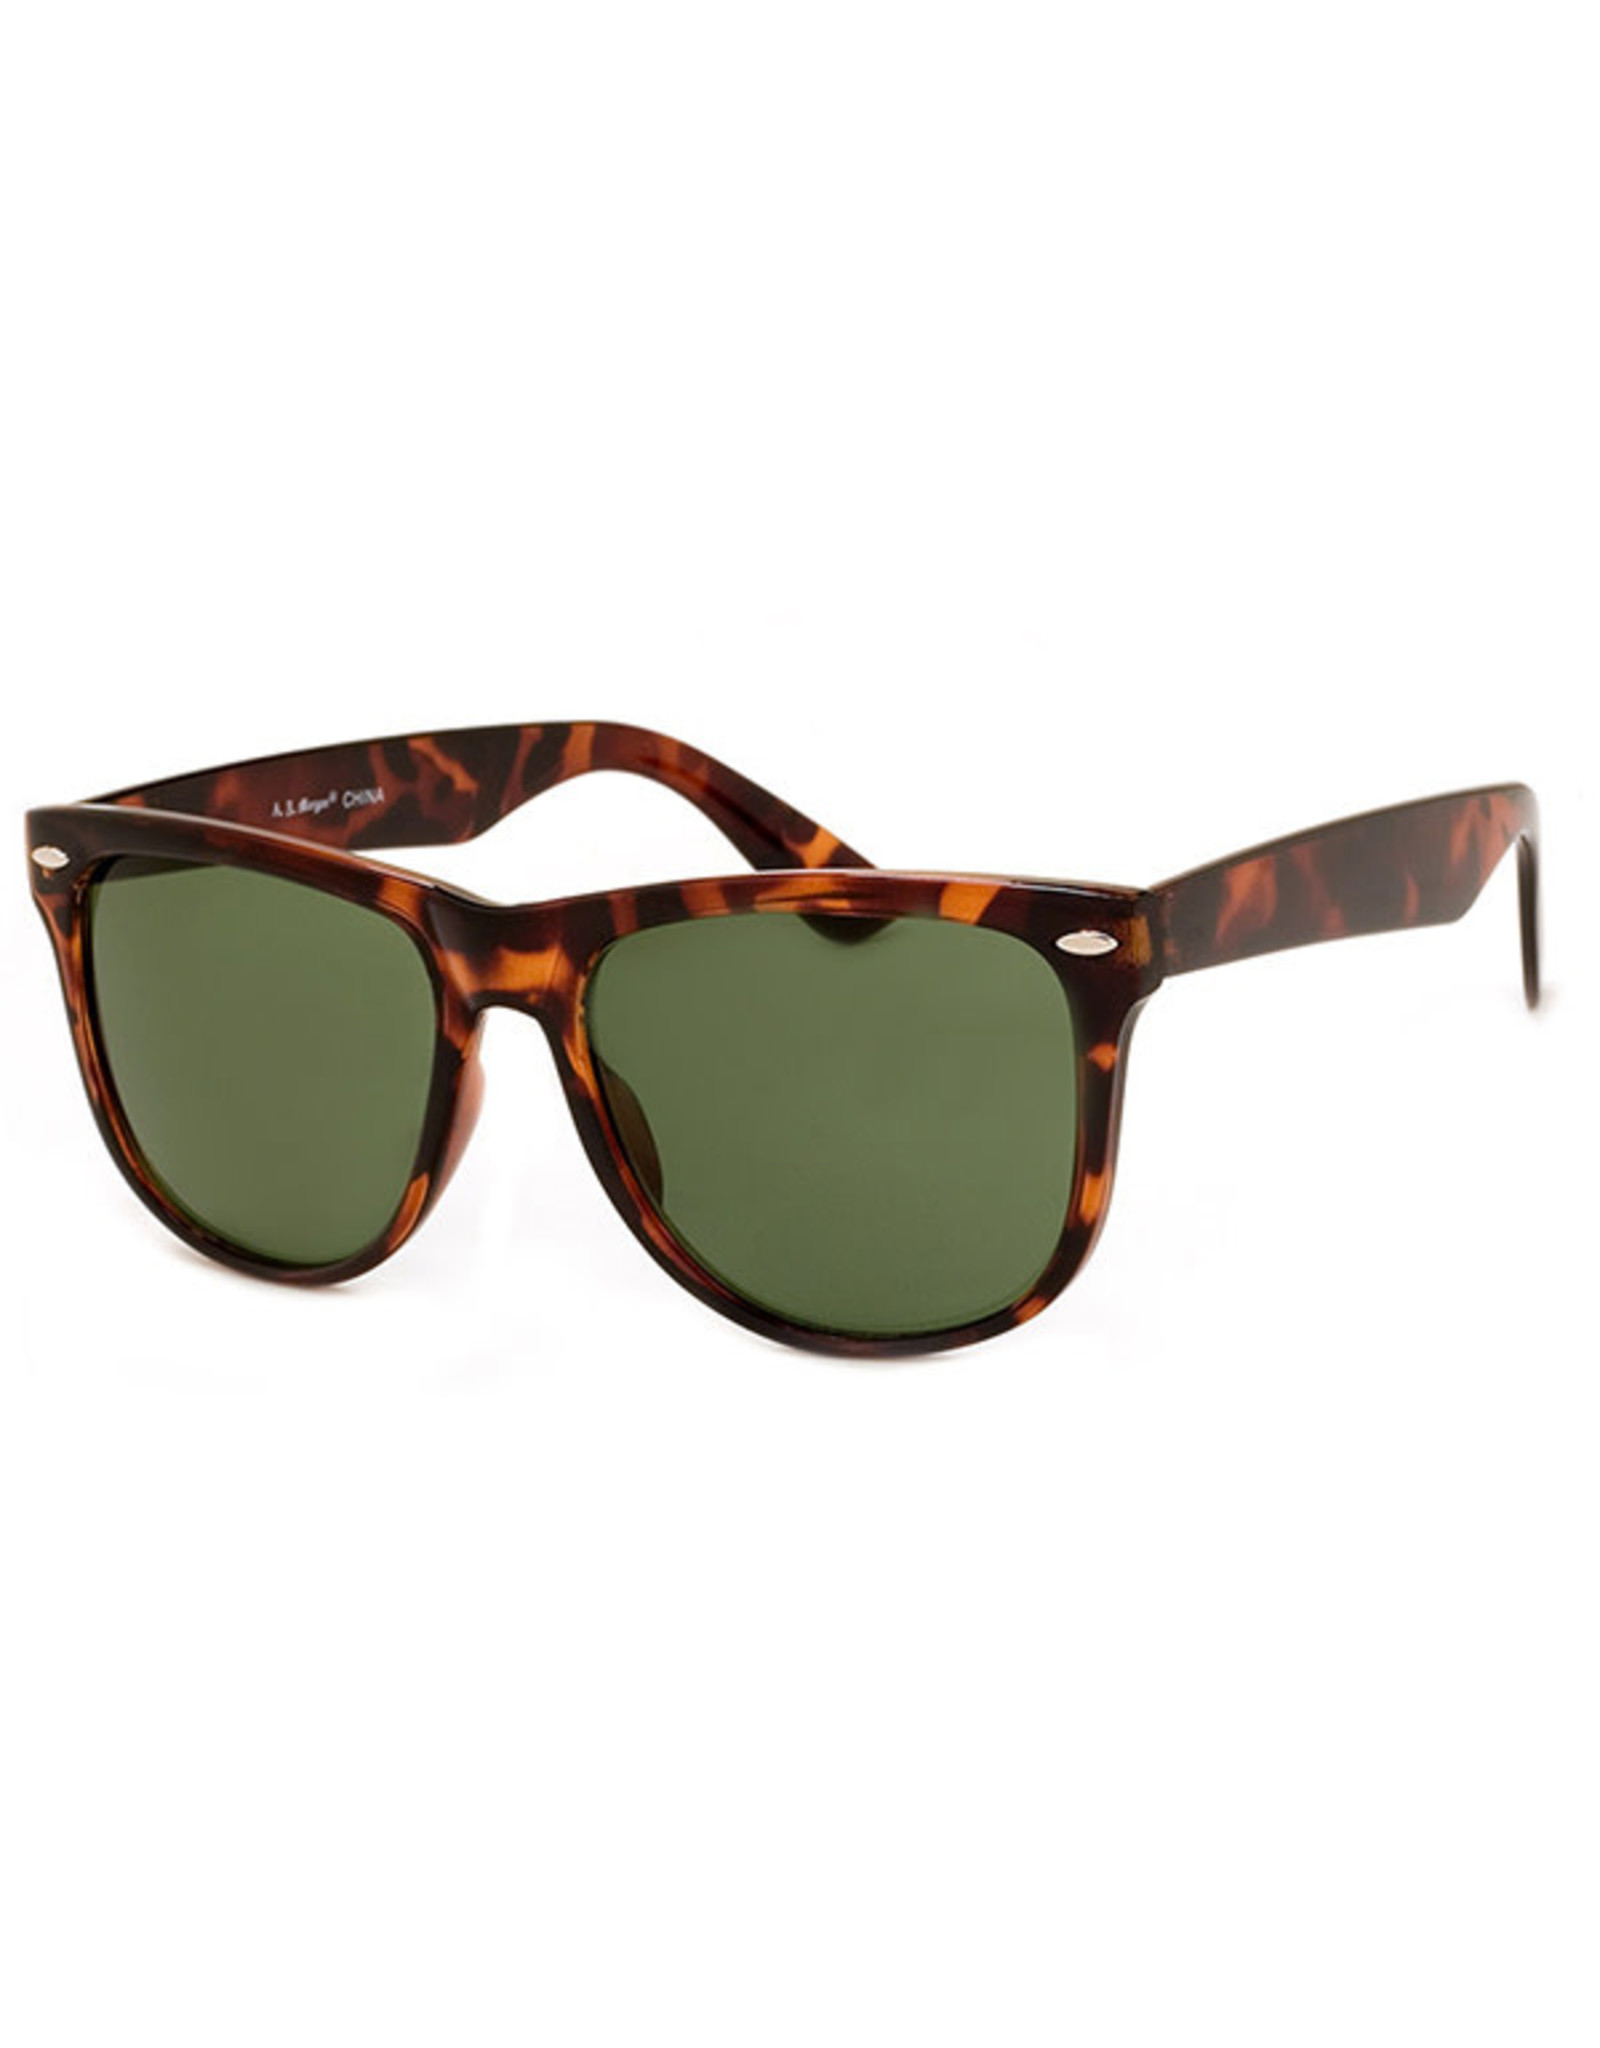 BGS AJM - Wayfarer Frame Sunglasses / Black or Tortoiseshell